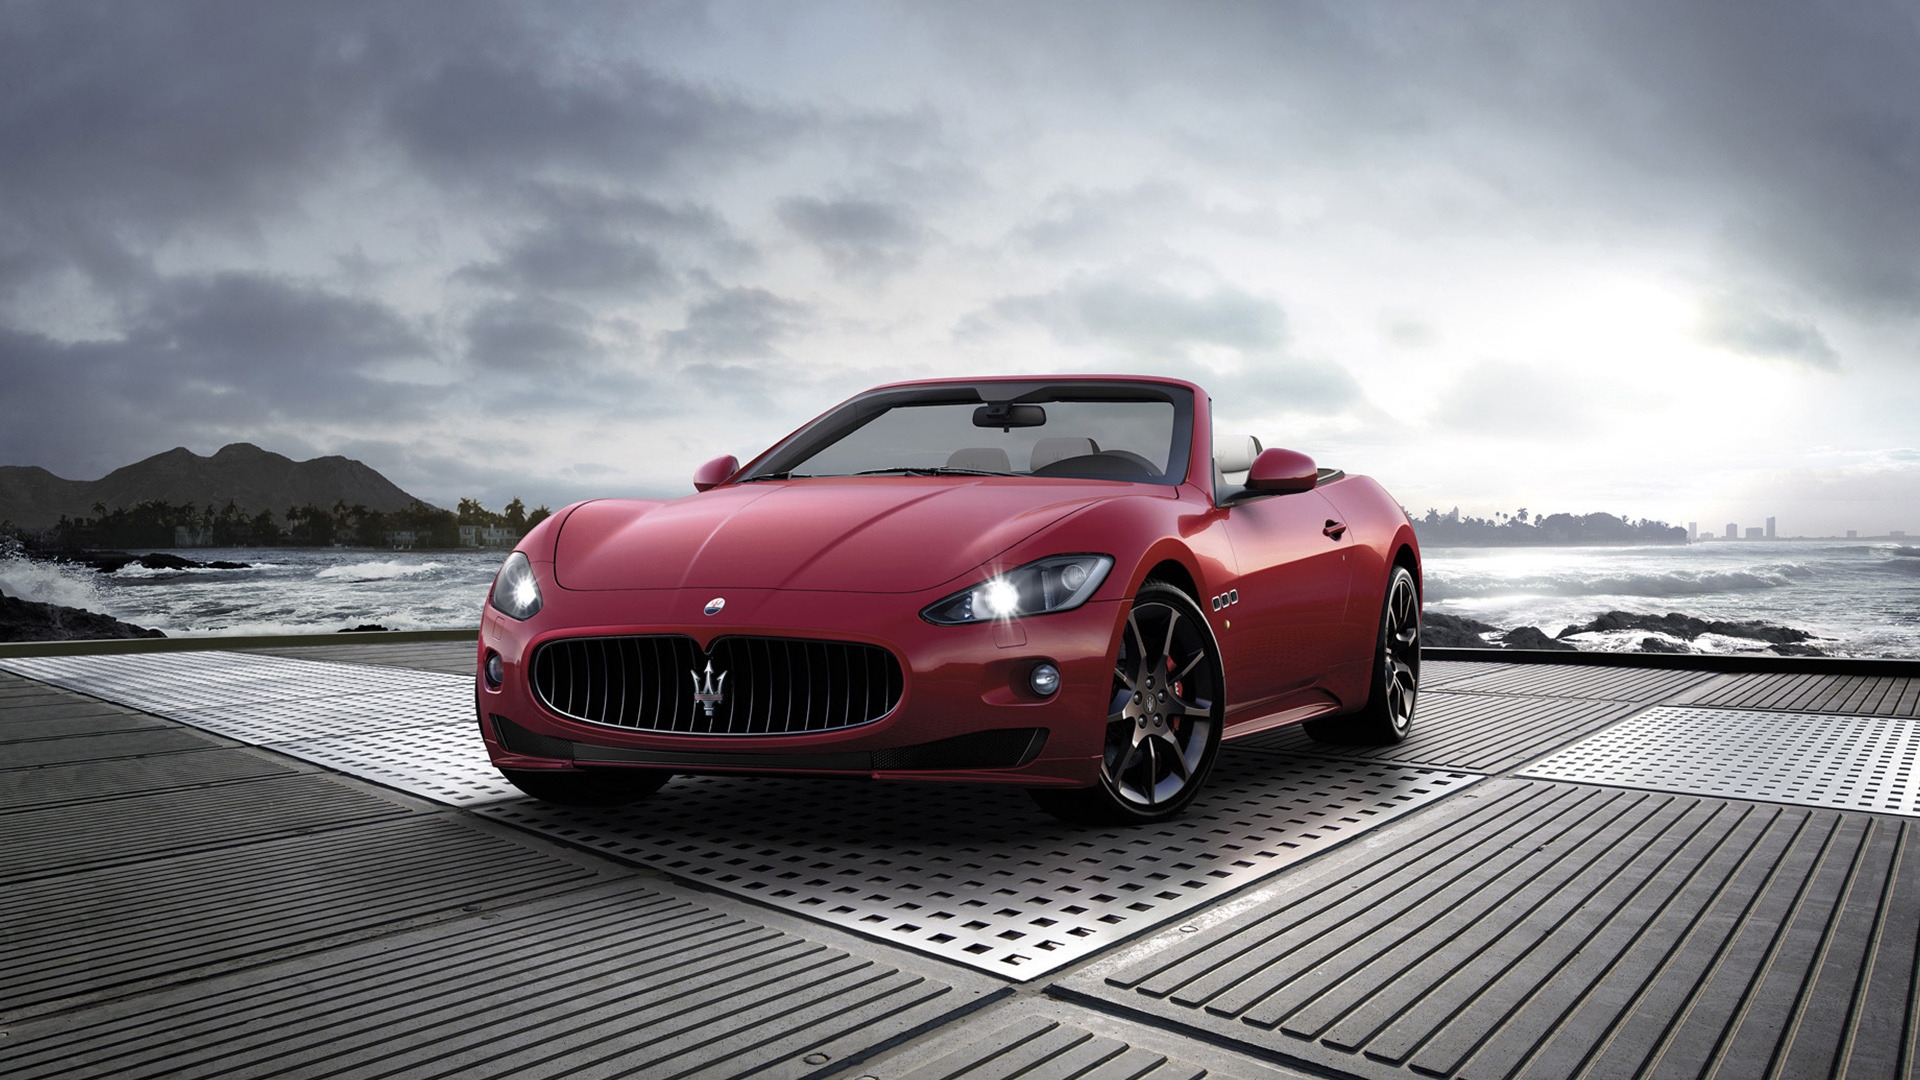 2011 Maserati GranCabrio Sport for 1920 x 1080 HDTV 1080p resolution